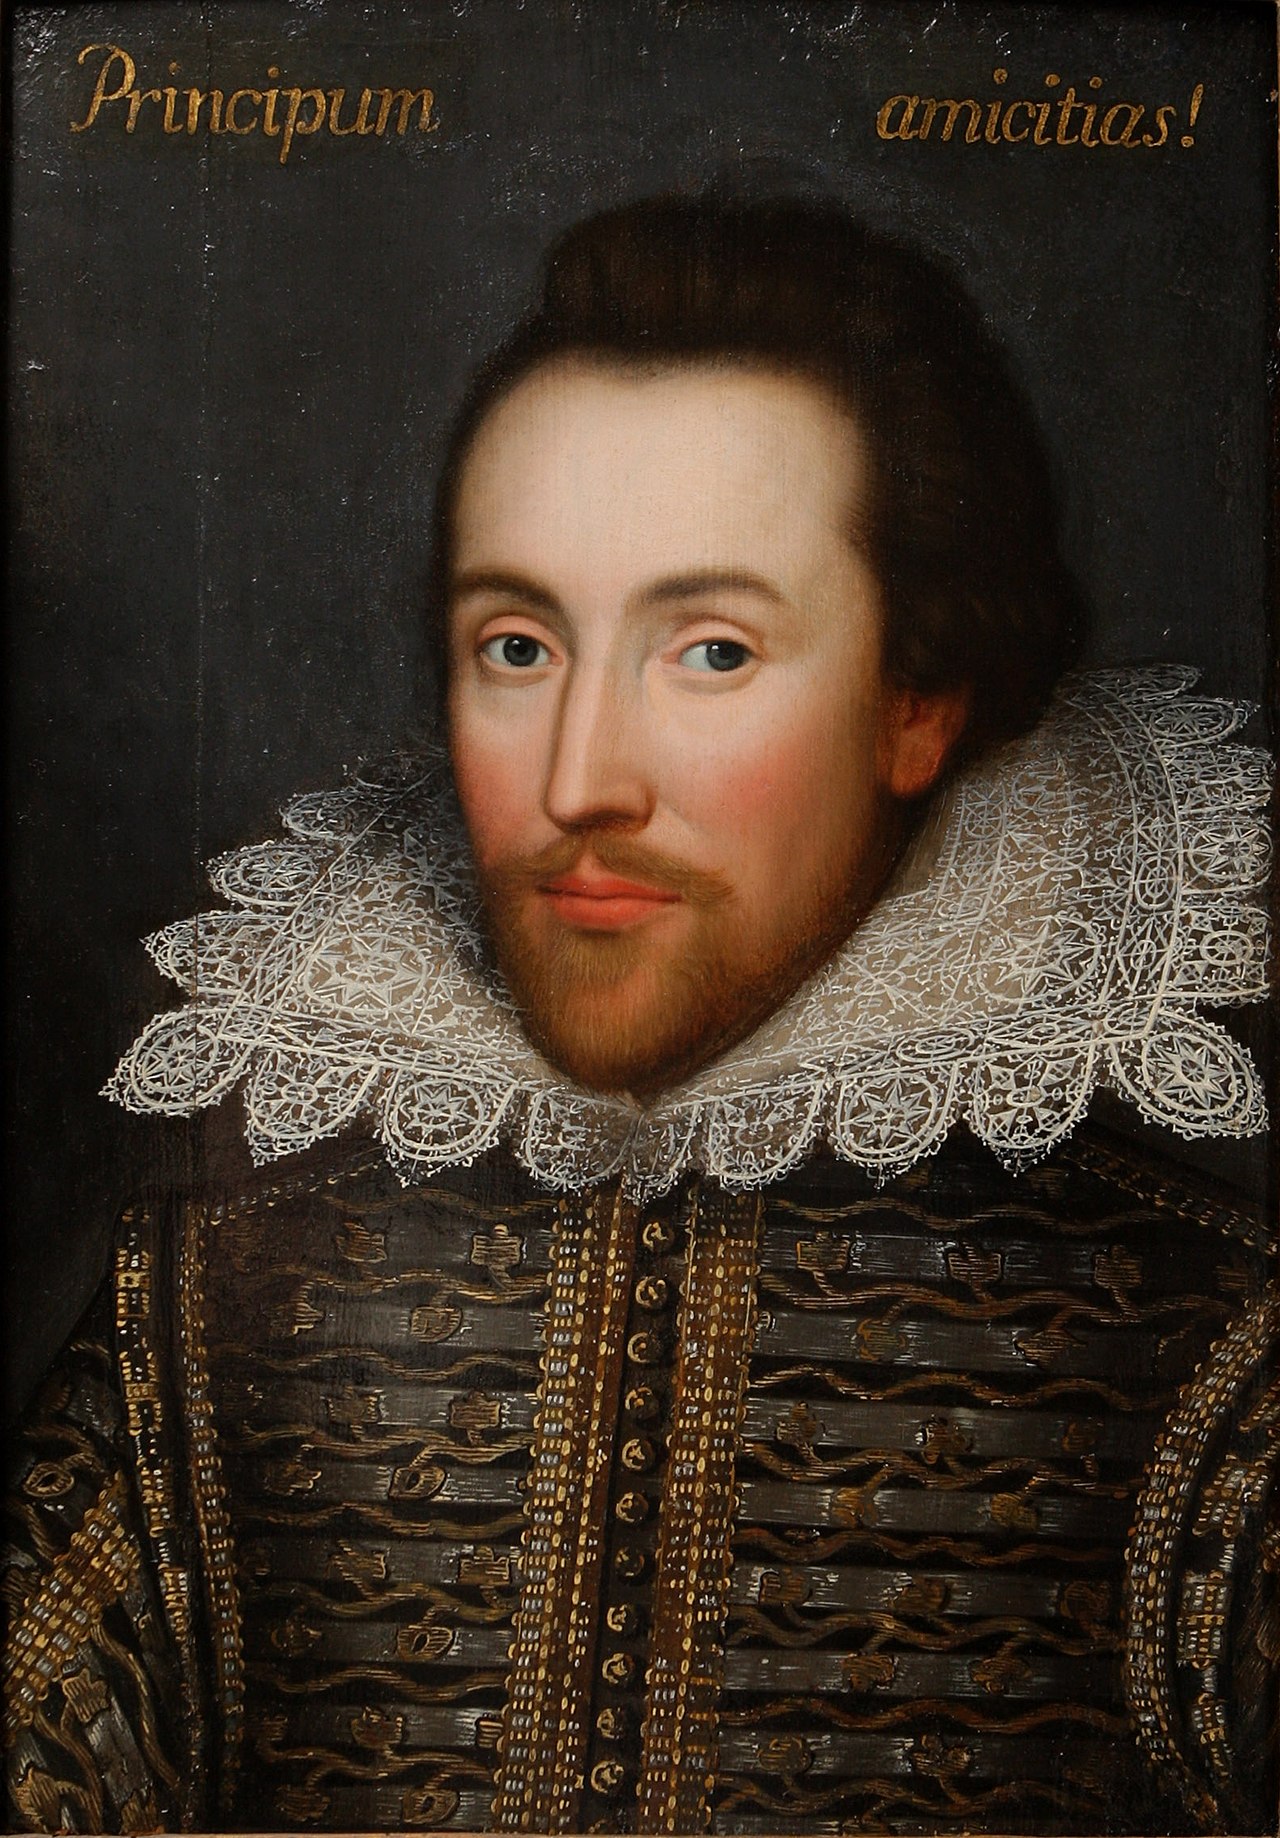 威廉·莎士比亚 英国戏剧家、作家、文学家 - 俊才汇-俊才汇